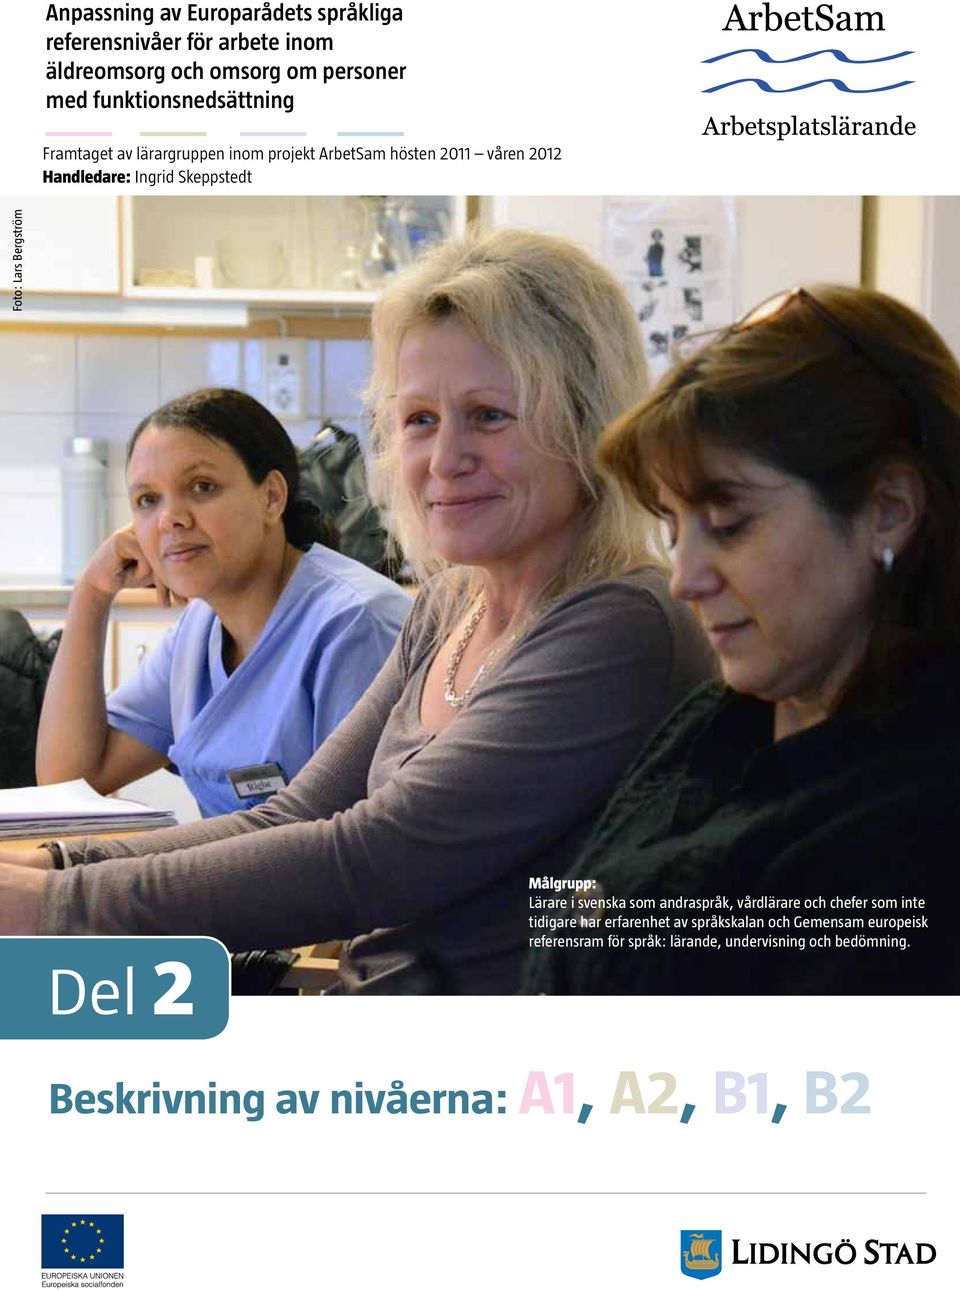 svenska som andraspråk, vårdlärare och chefer som inte tidigare har erfarenhet av språkskalan och Gemensam europeisk referensram för